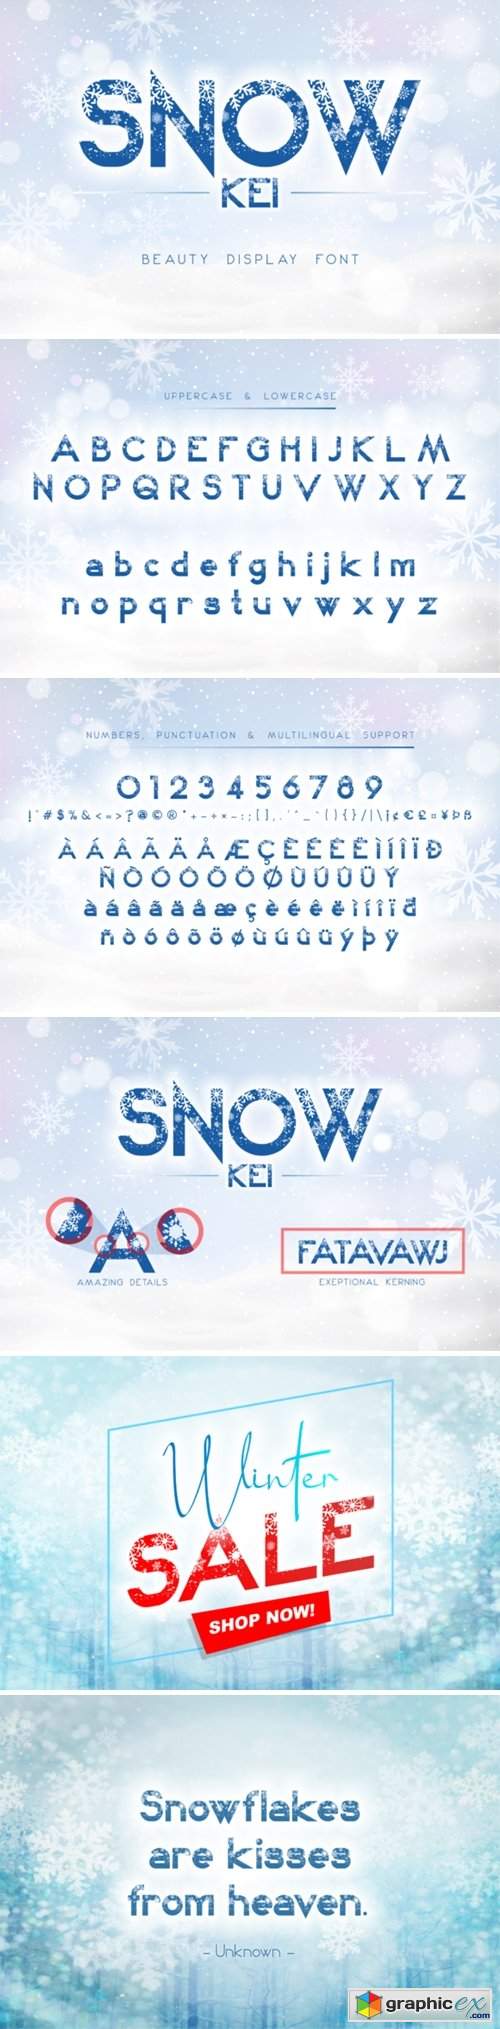  Snow Kei Font 